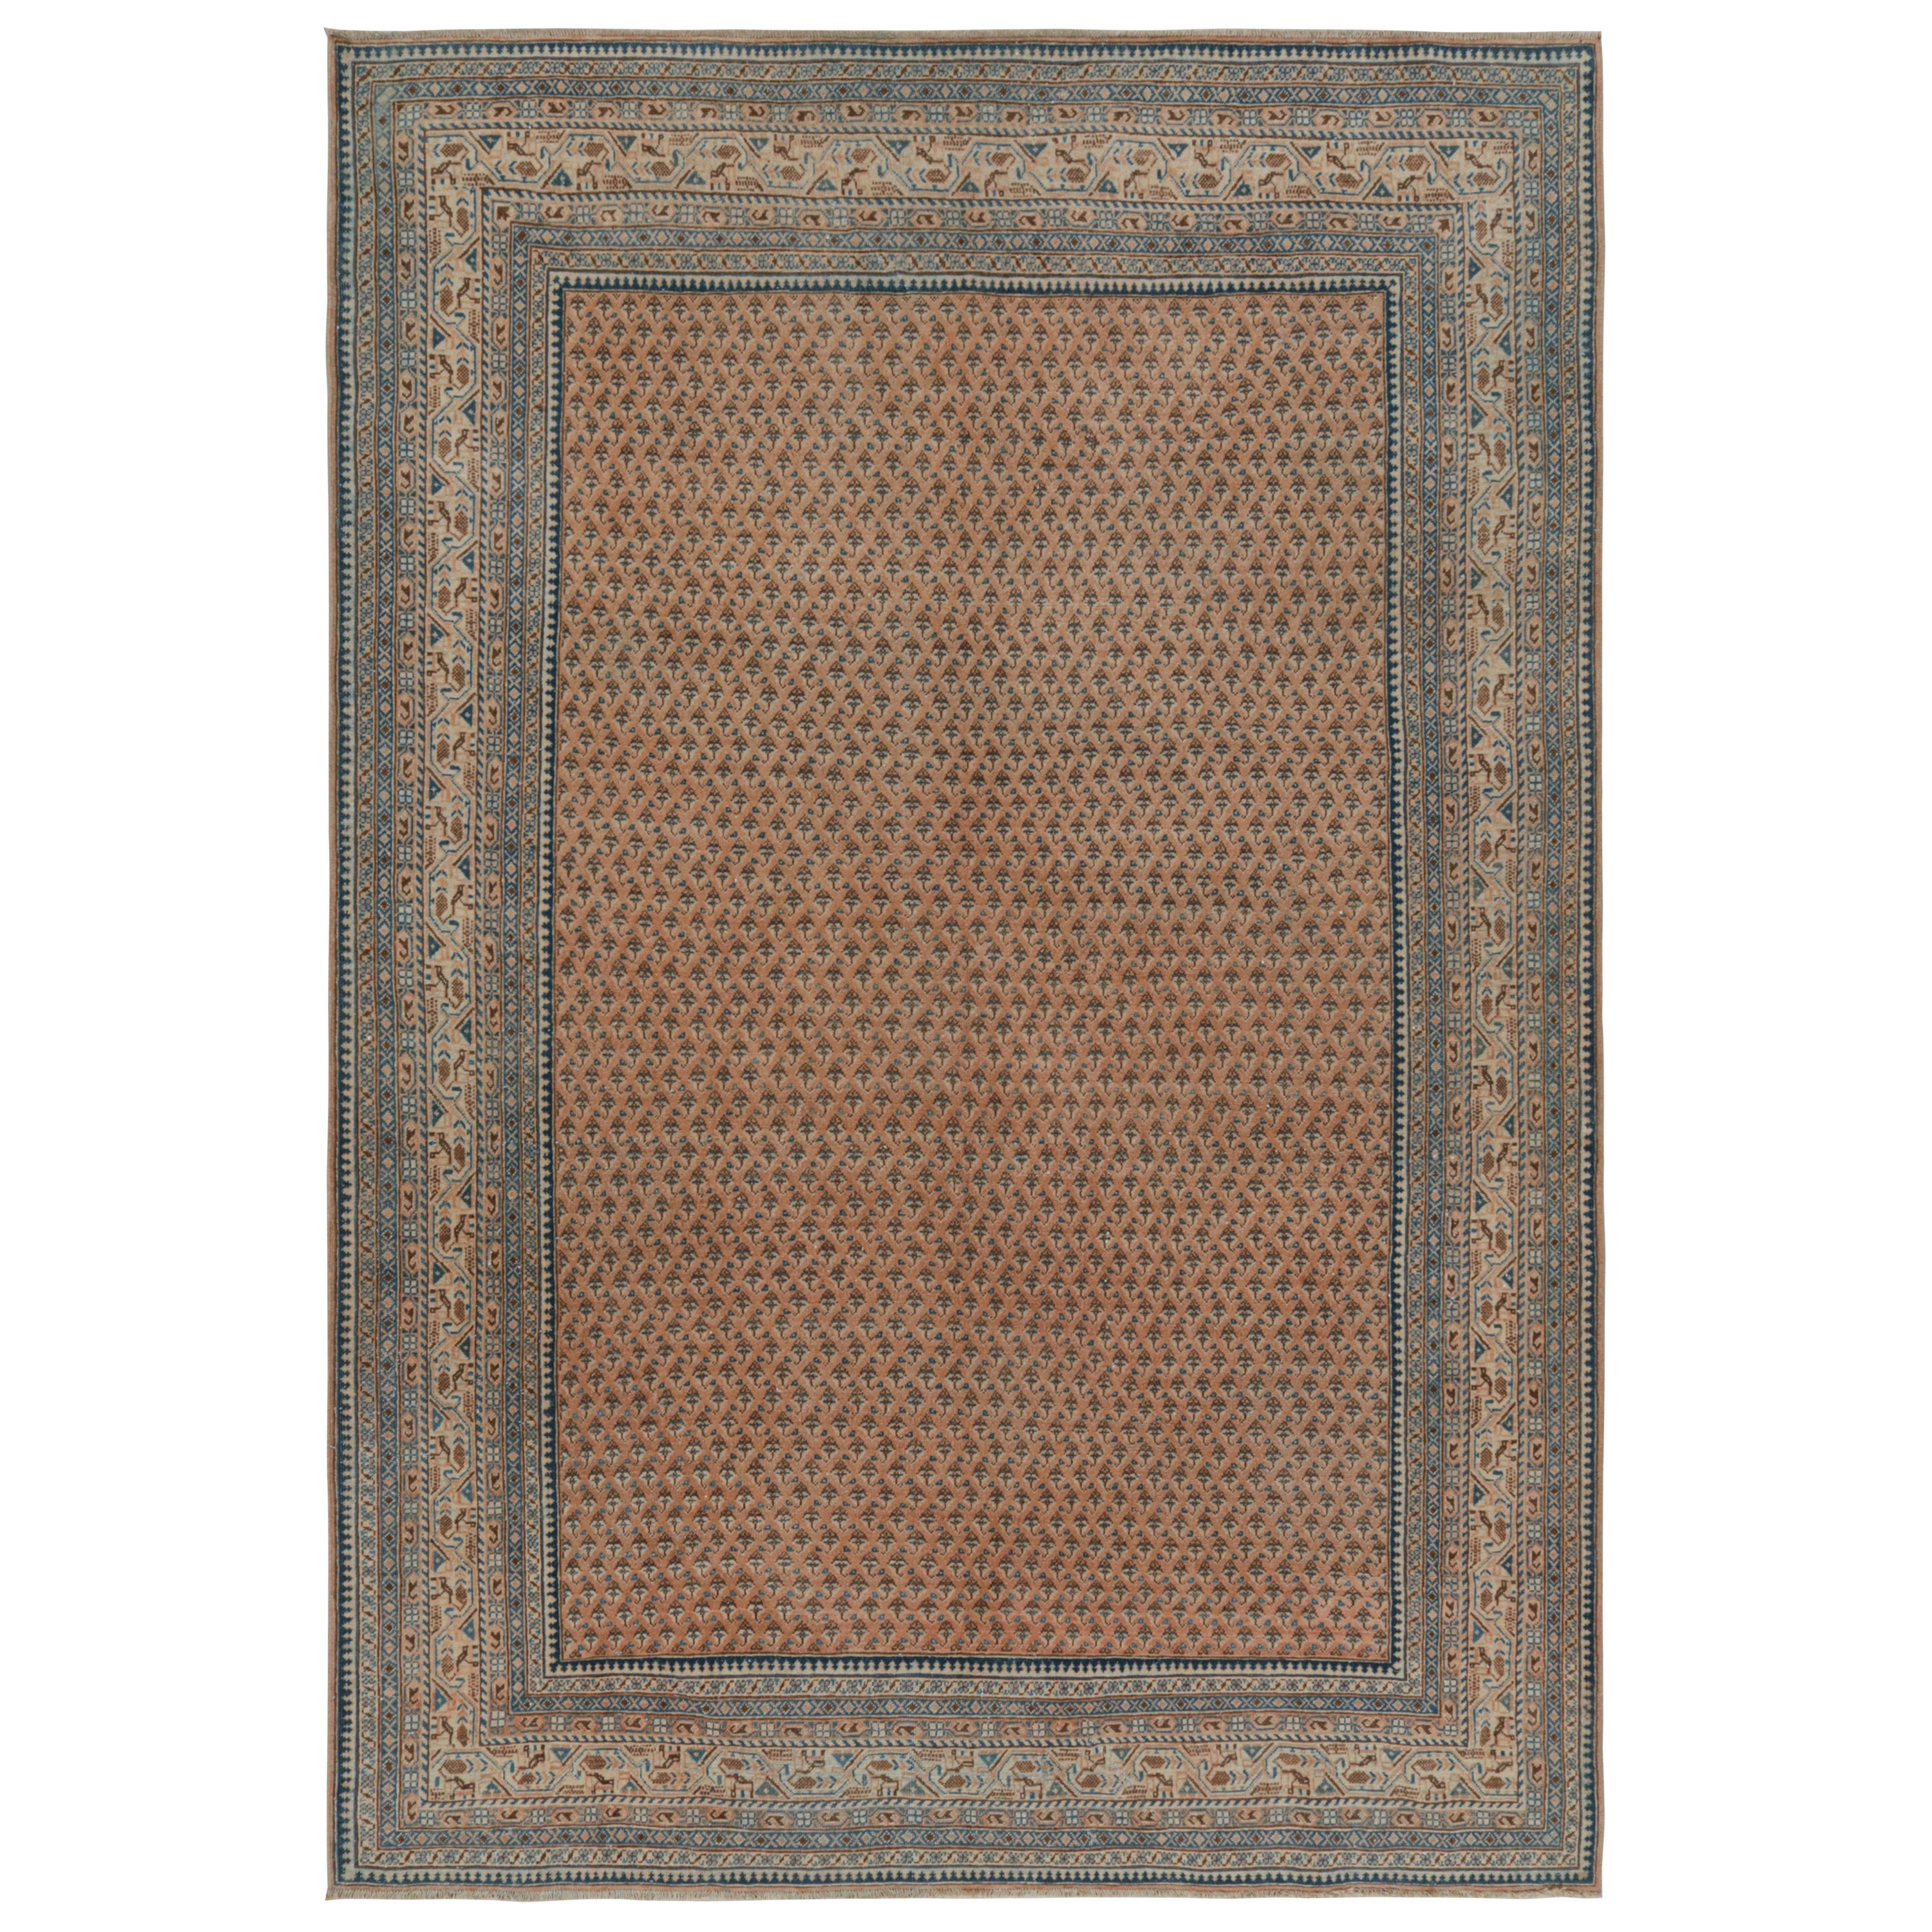 Indischer Teppich mit Beige-Braun- und Blau-Muster von Rug & Kilim